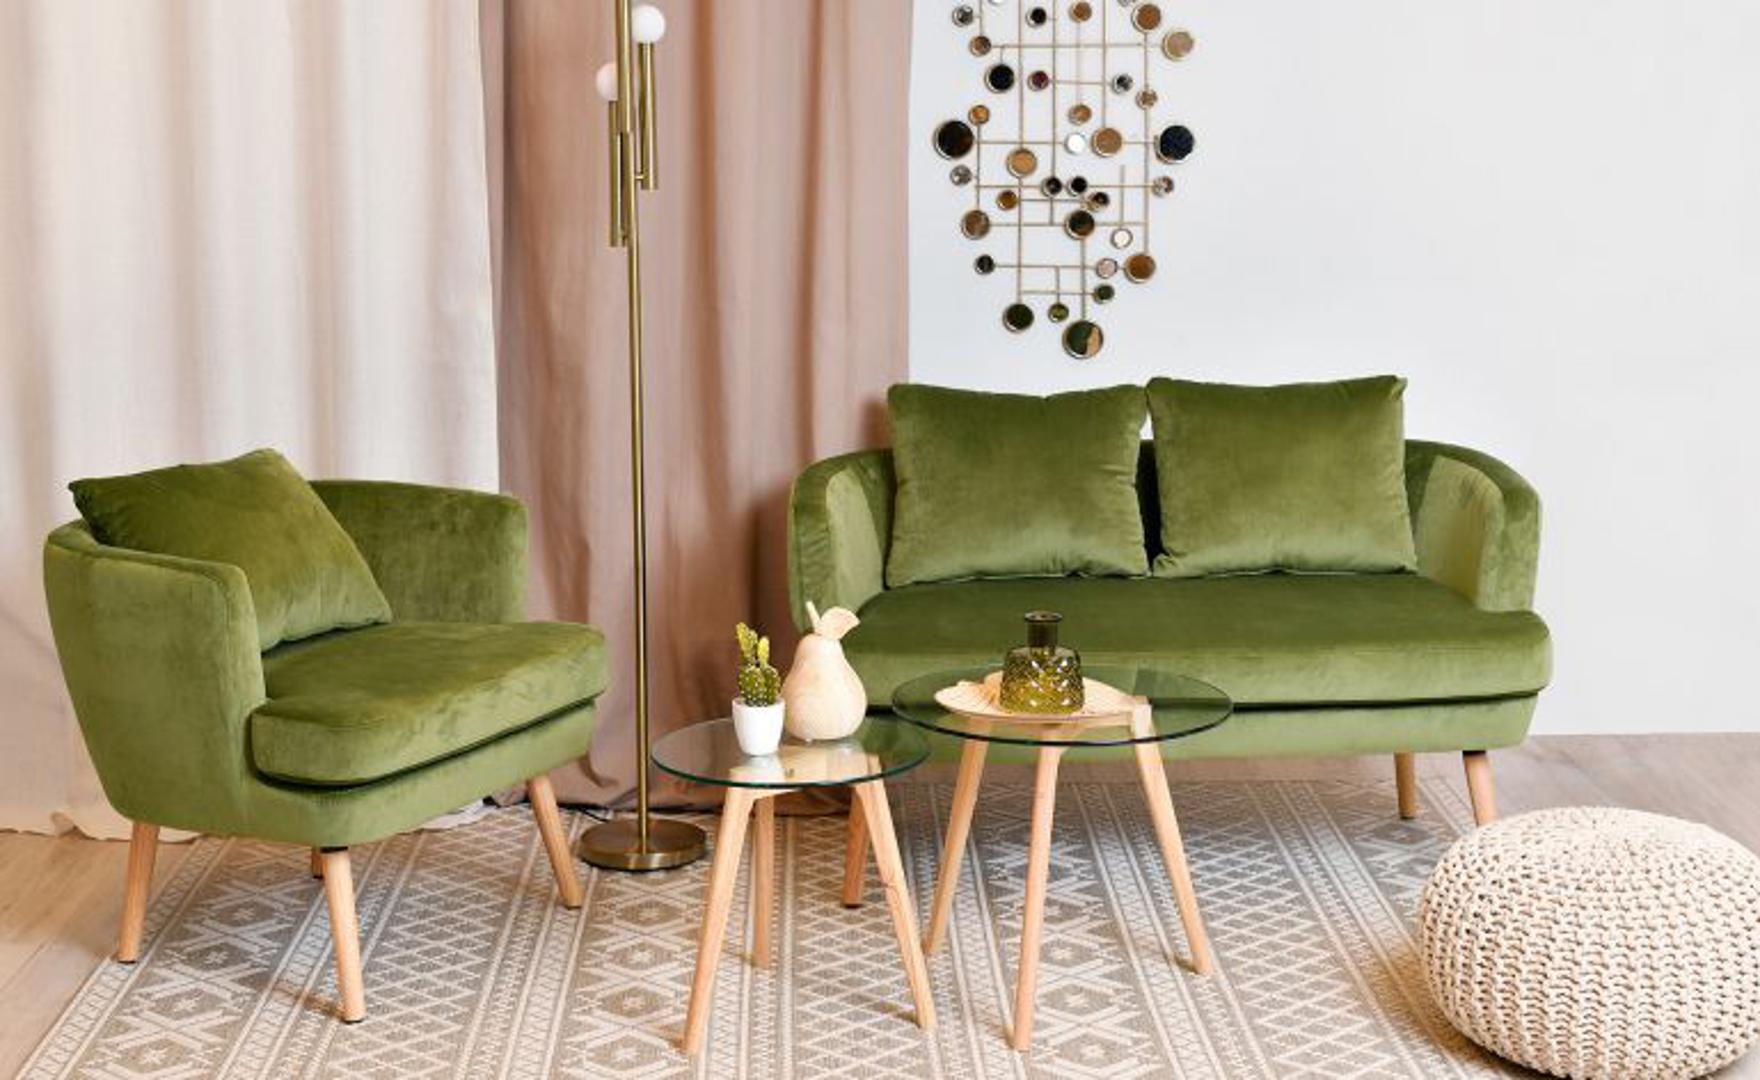 Prirodnom drvenom materijalu najbolje pristaju i prirodne boje. Zelena sofa, ovoga puta, stilski obogaćuje prostor, a materijal od pliša čini je nositeljicom trendova ove jeseni. Emmezeta 1999,99 kn